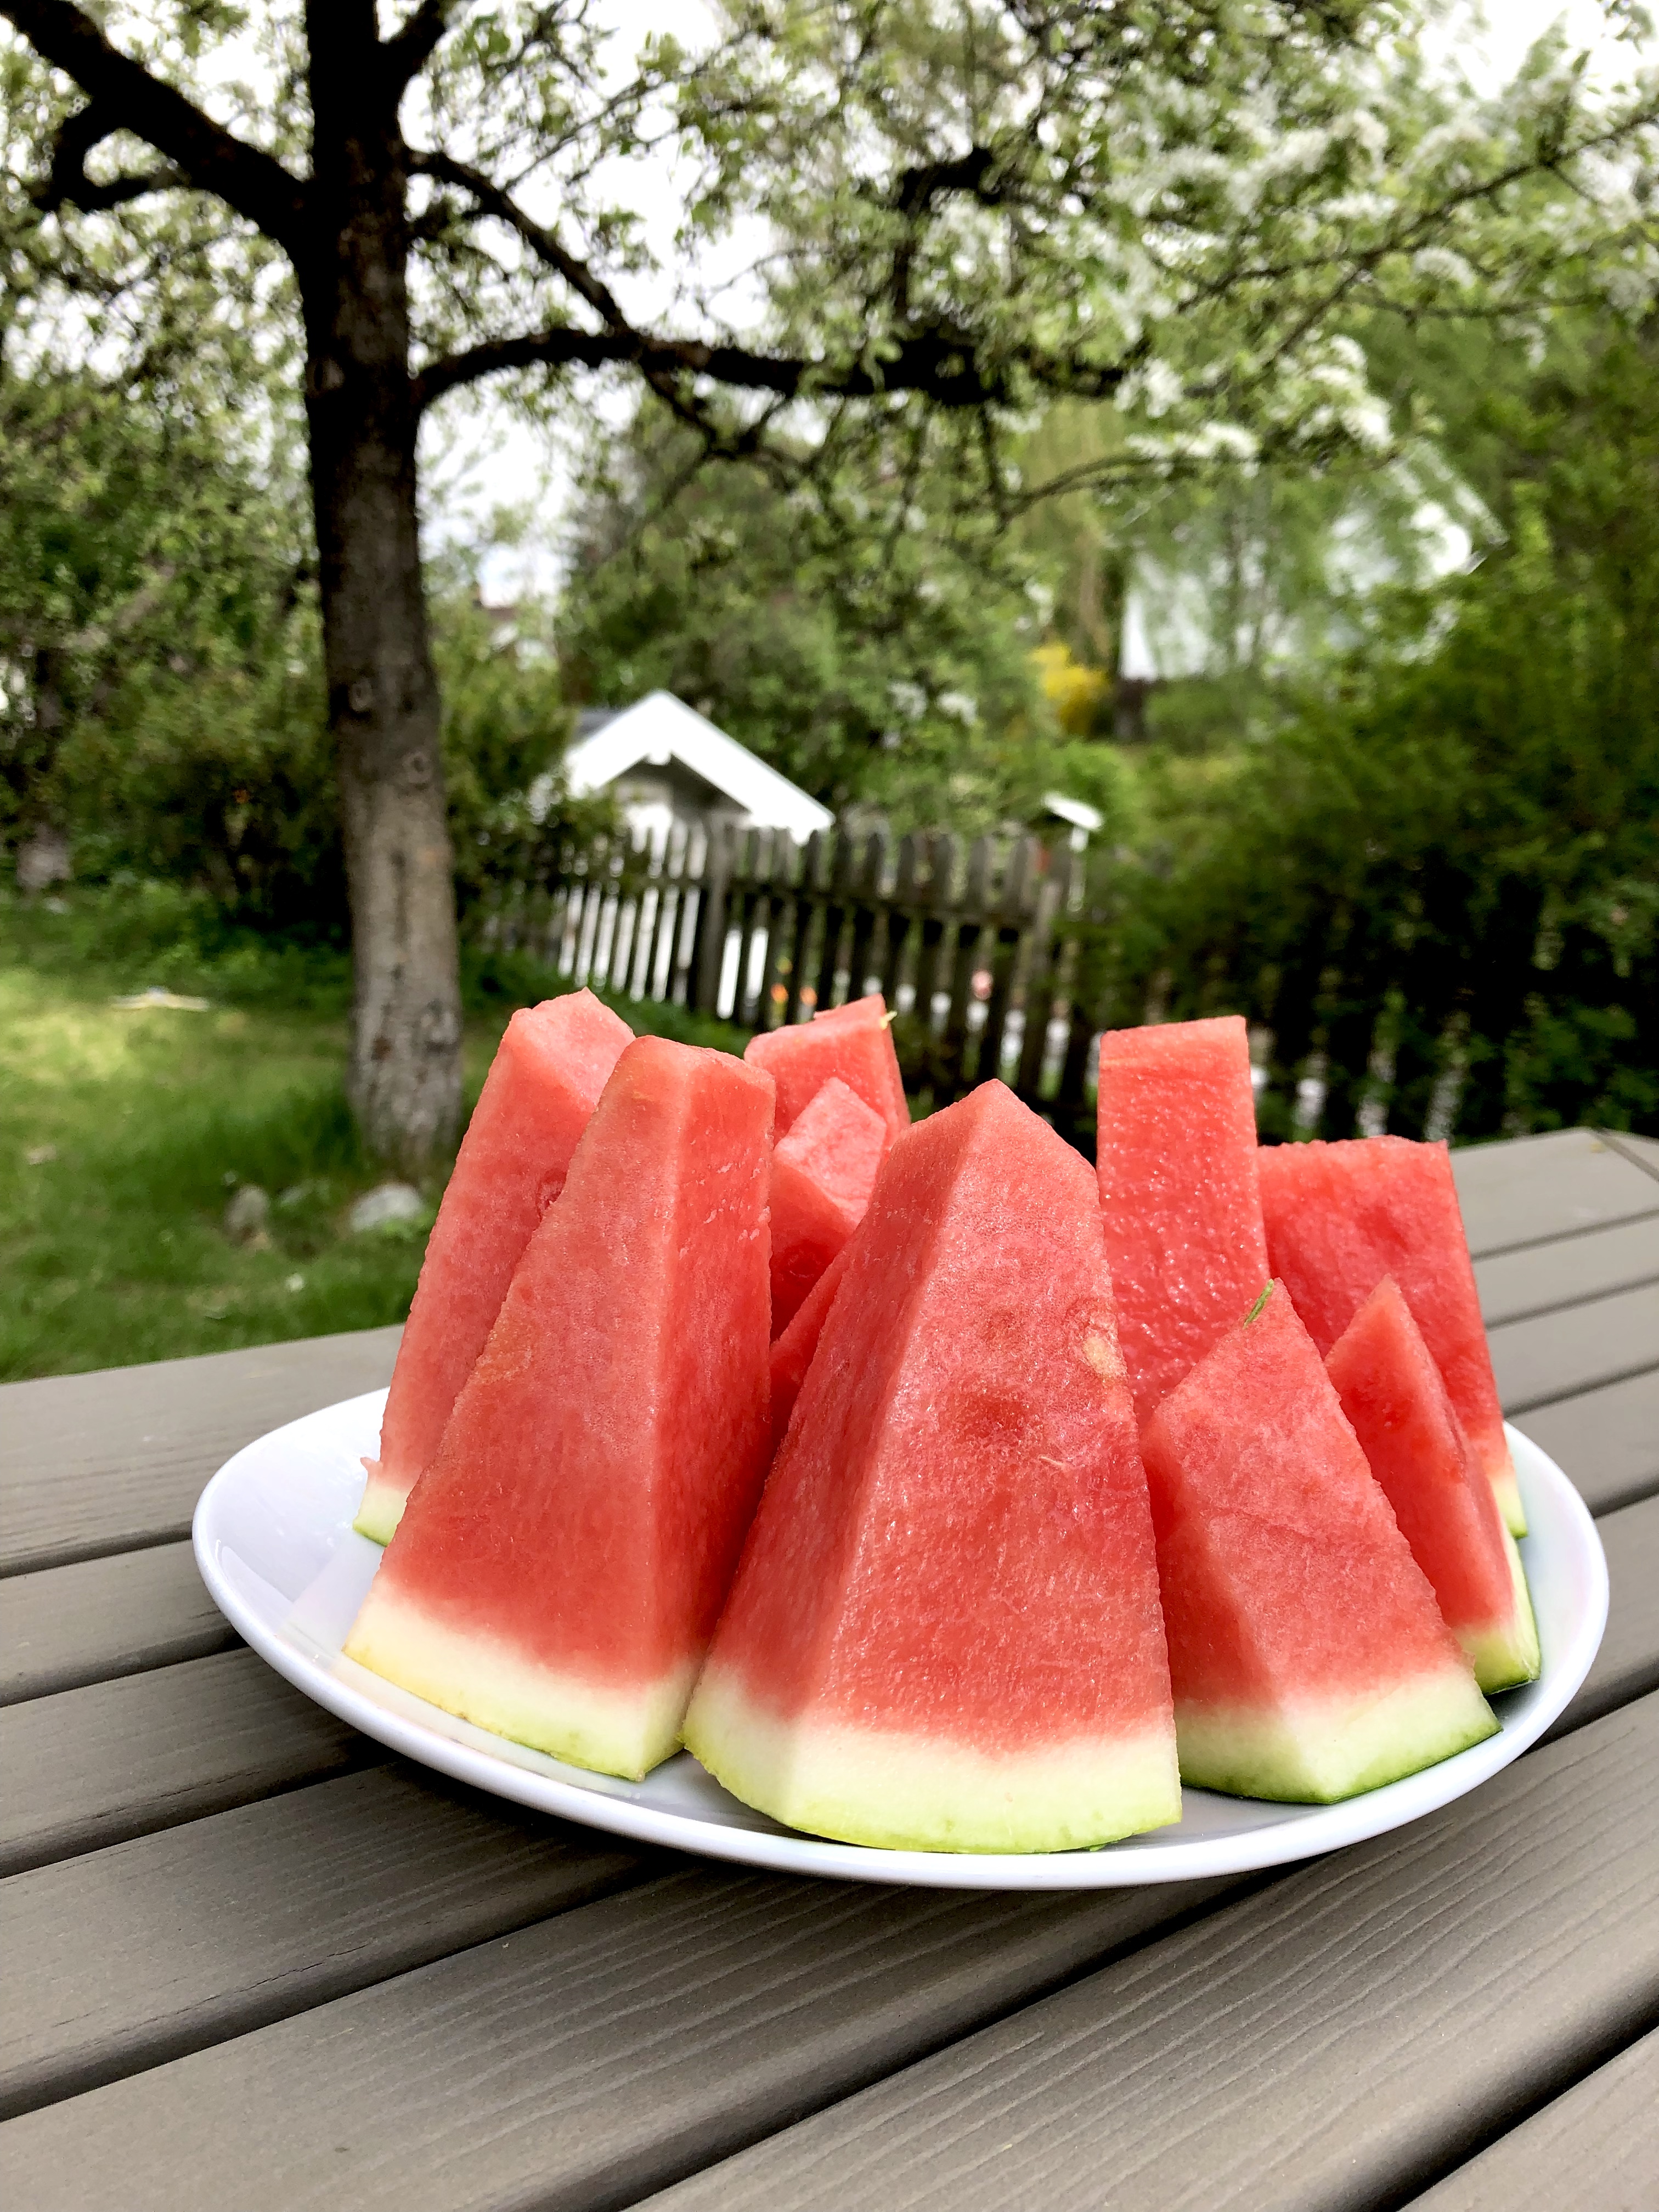 vannmelon i hagen.jpg